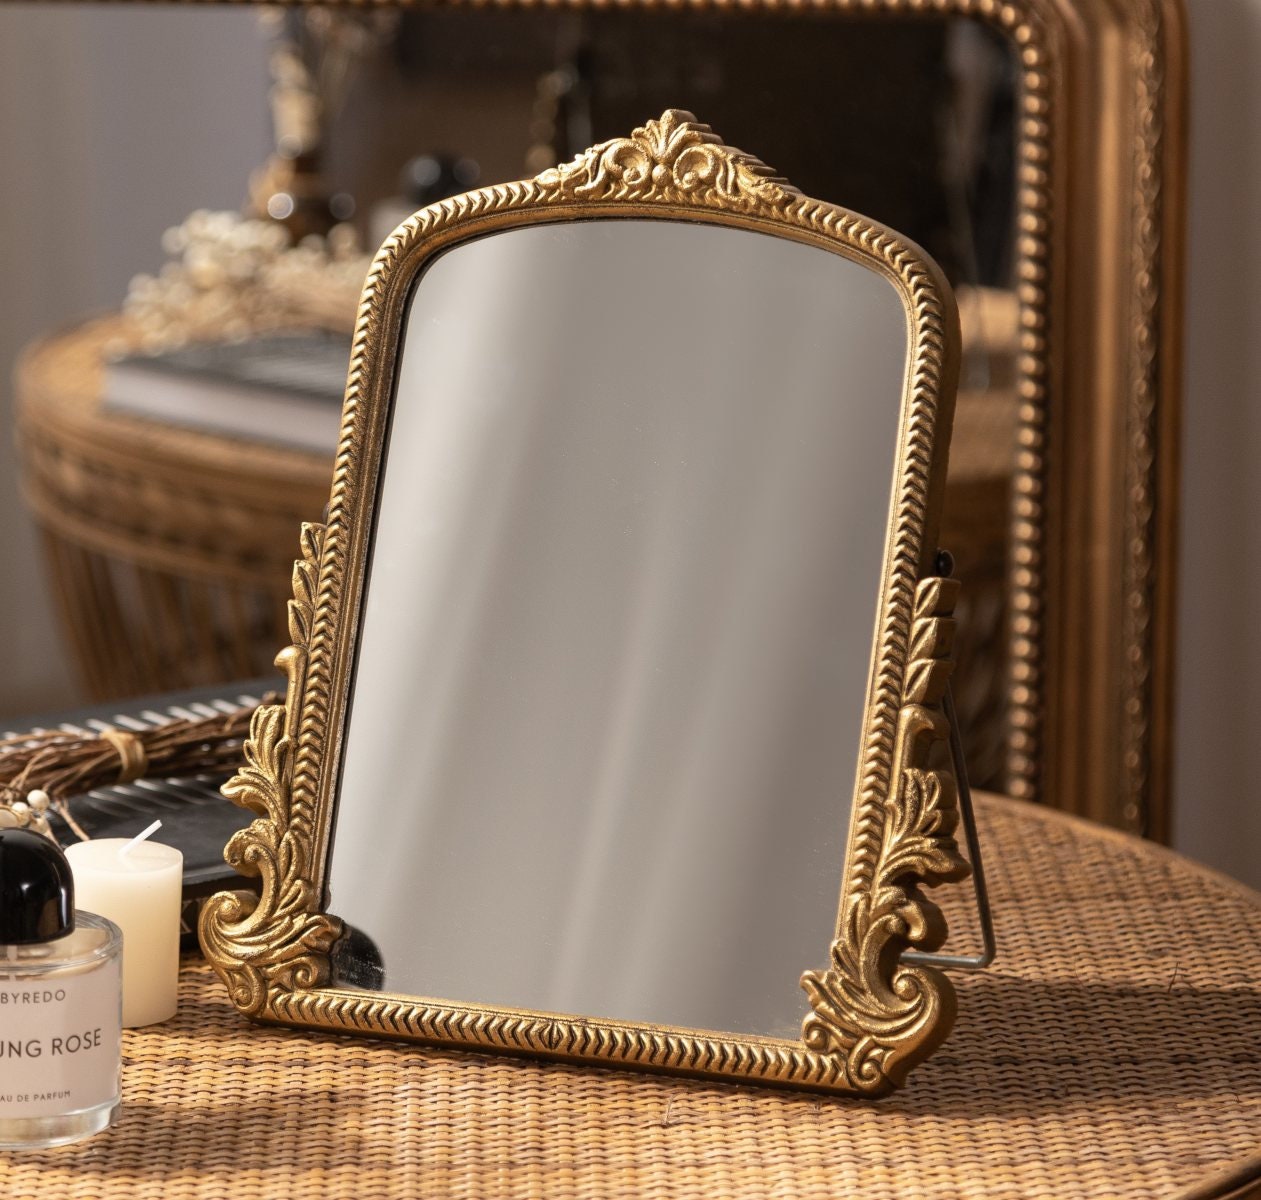 Espejo de pared estilo provenzal marco tallado -Espejos